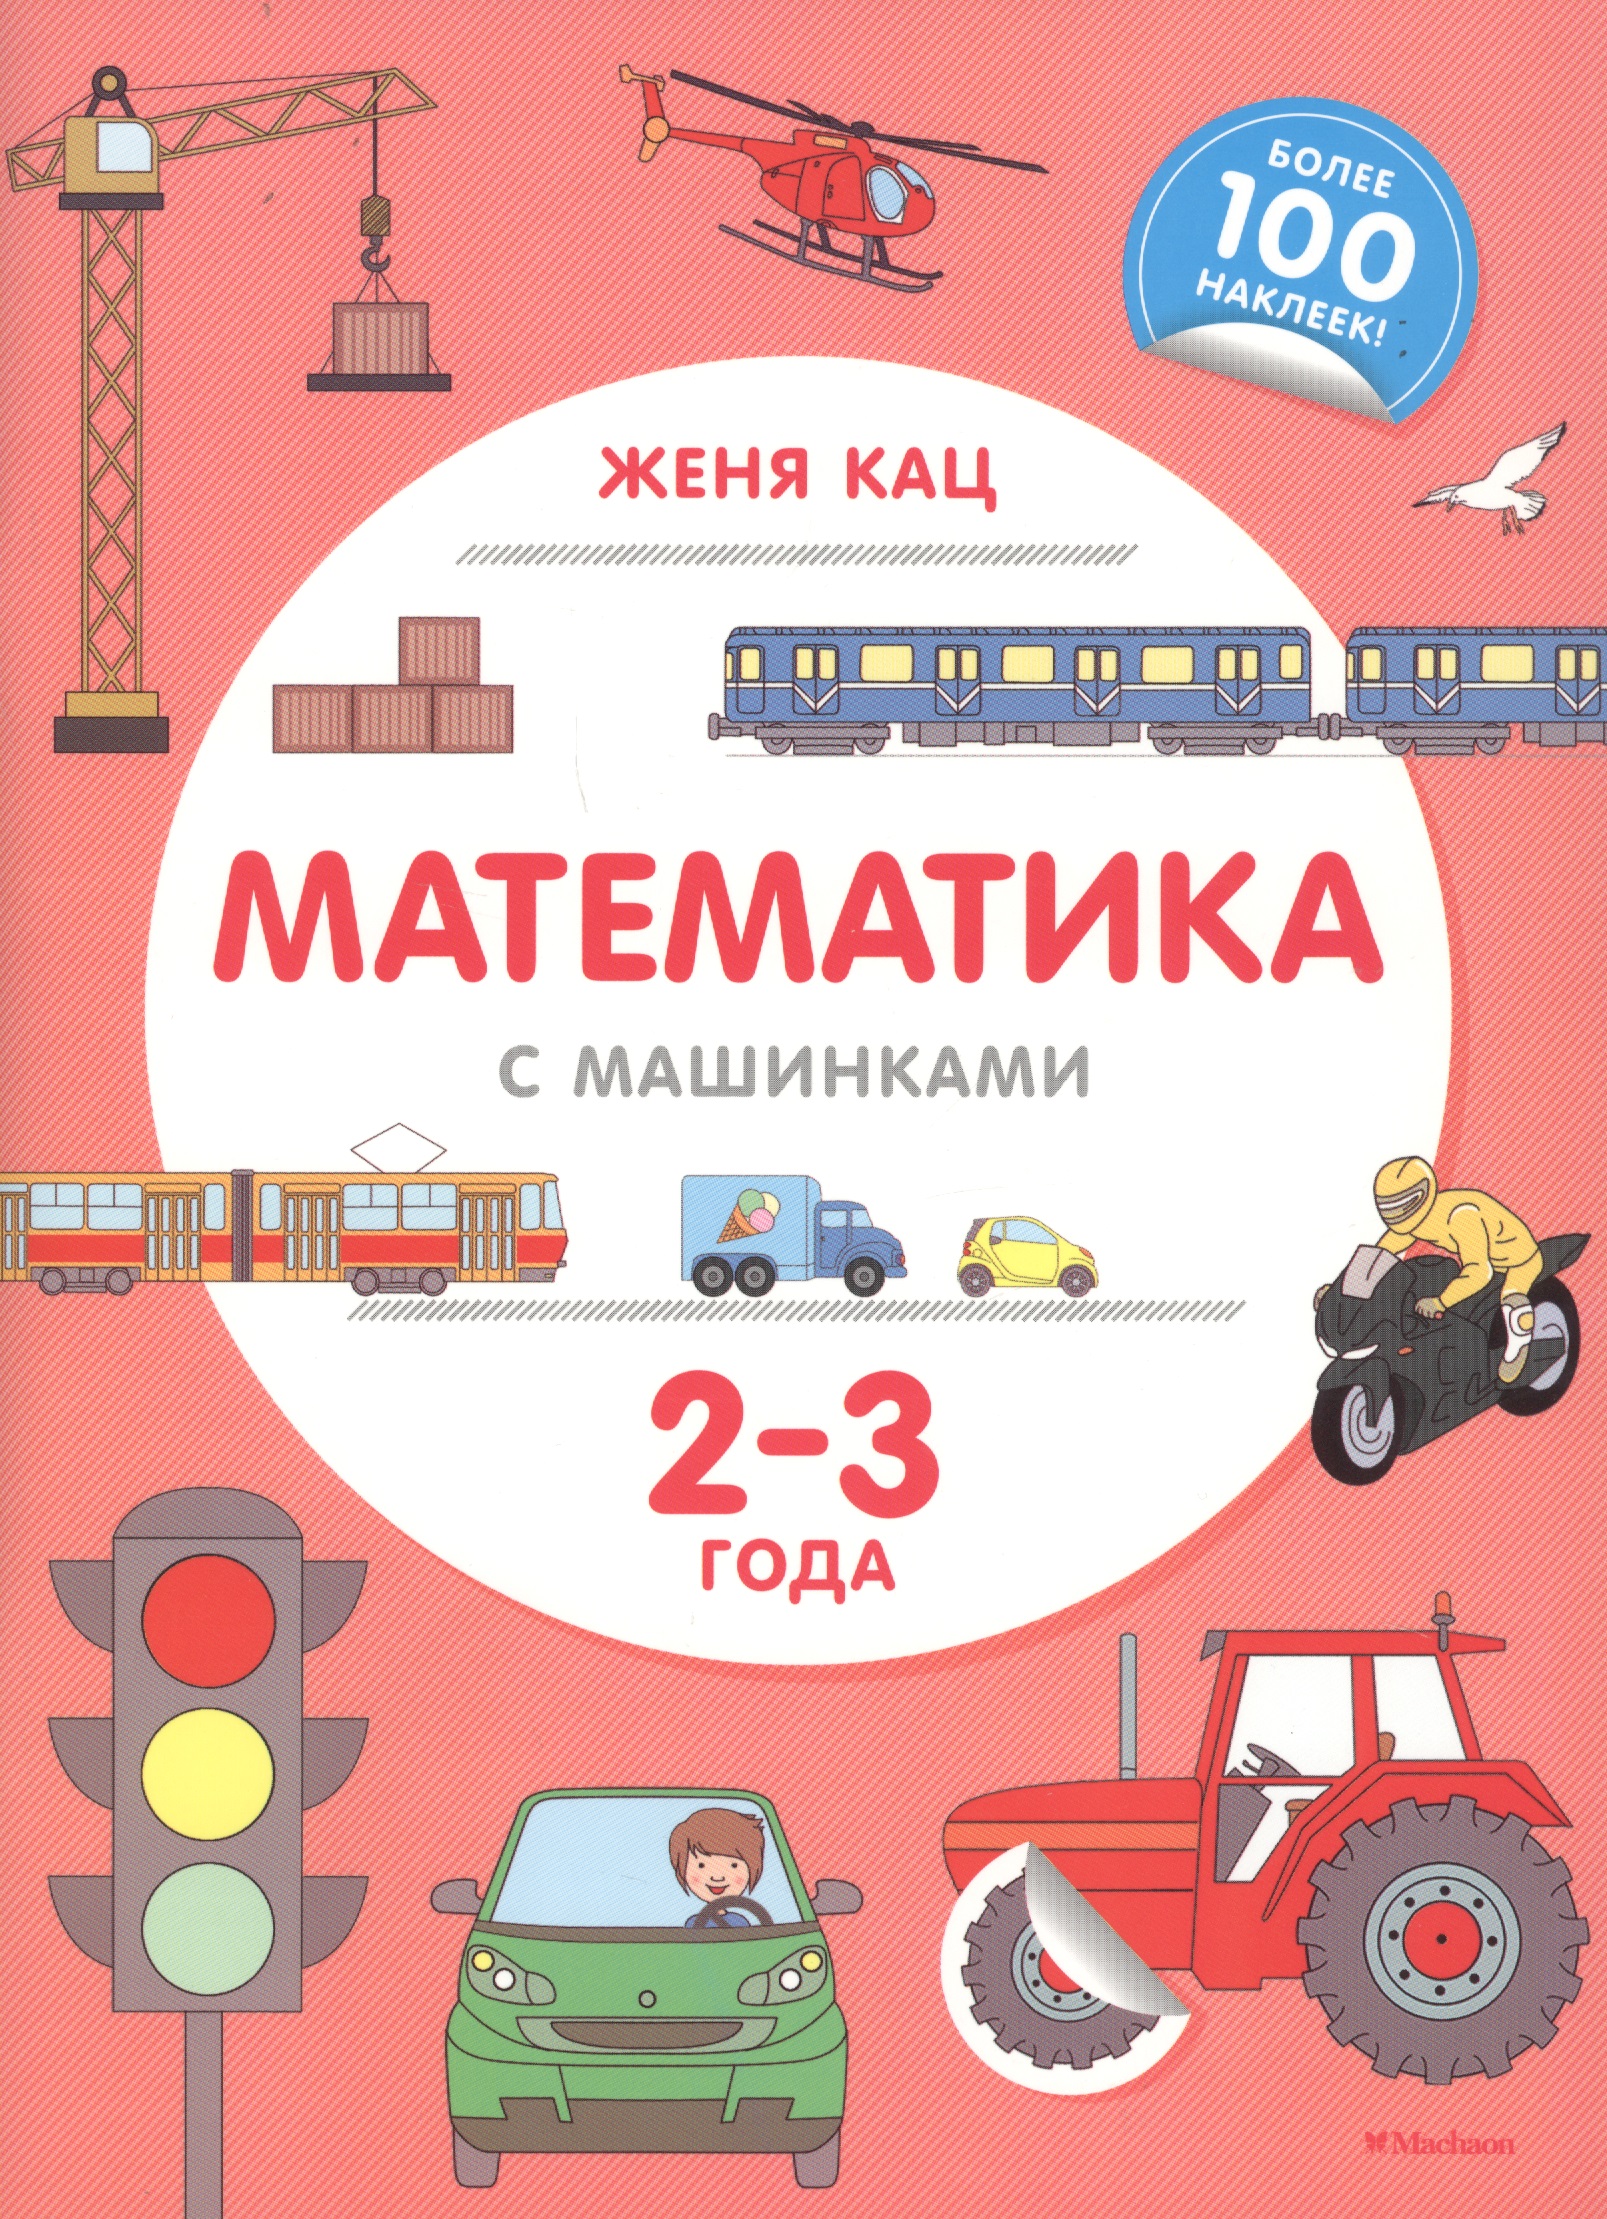 Кац Евгения Марковна Математика с машинками. 2-3 года кац женя игрушечные рассказы